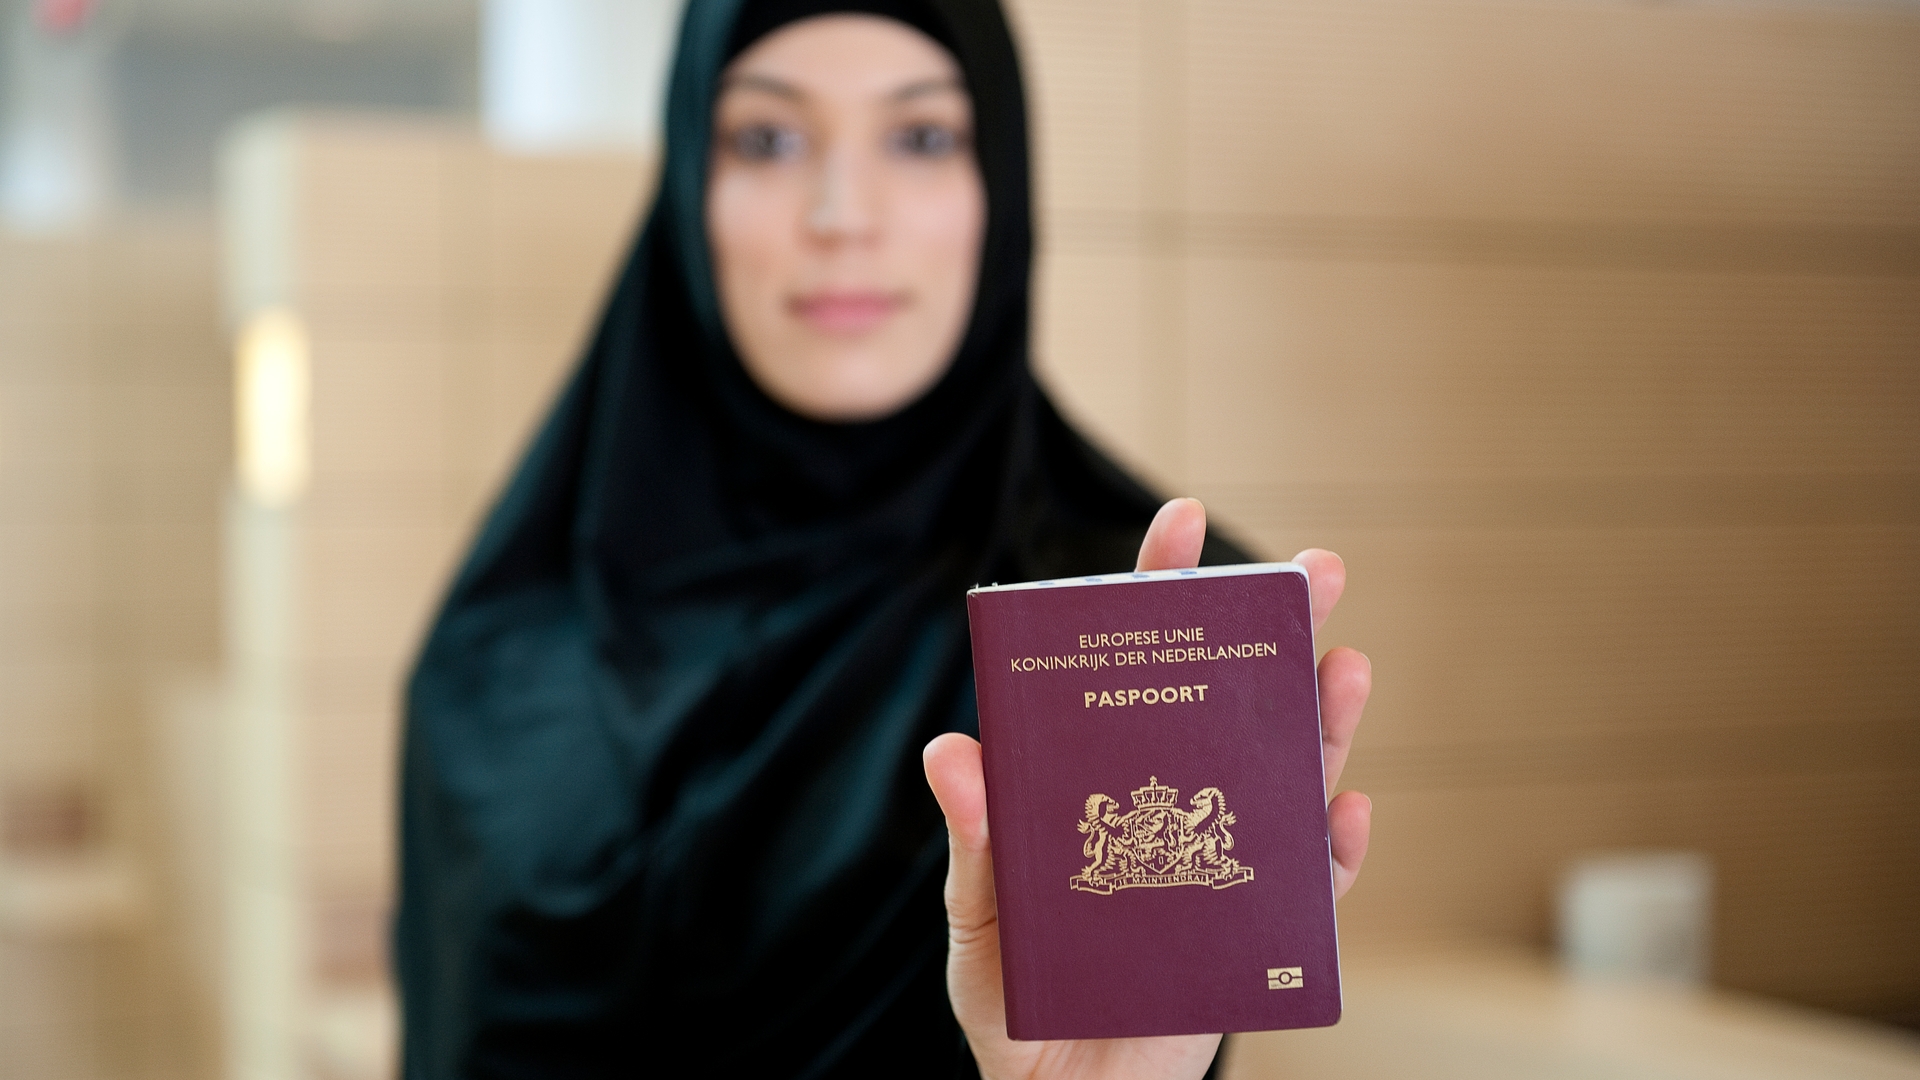 XTRA - Moslima met Nederlands paspoort